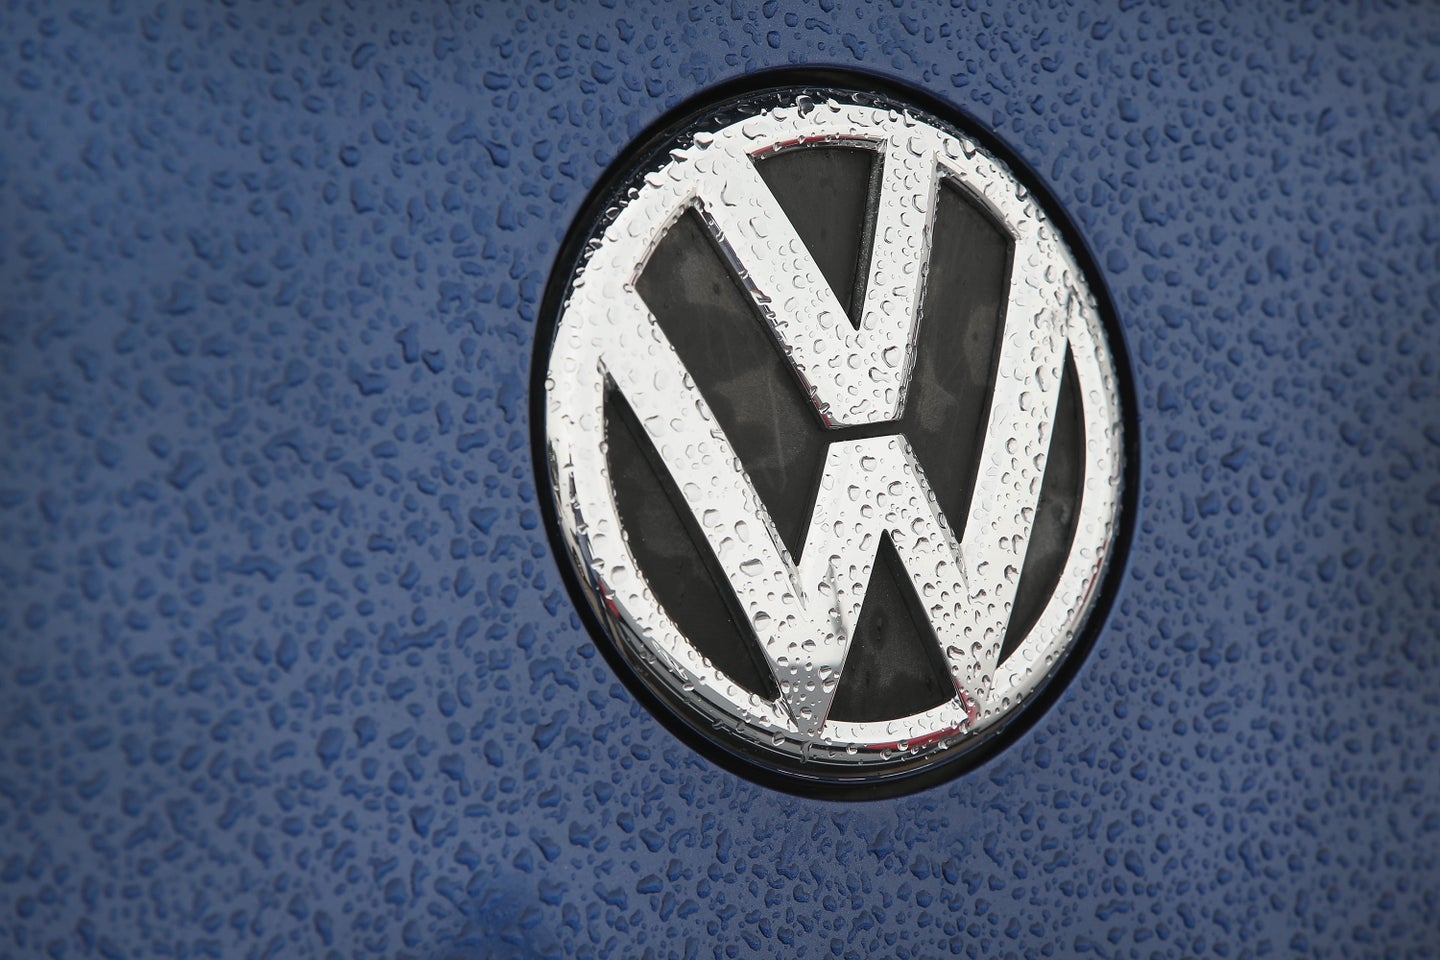 Investors Sue Volkswagen for $10.7B Over Dieselgate